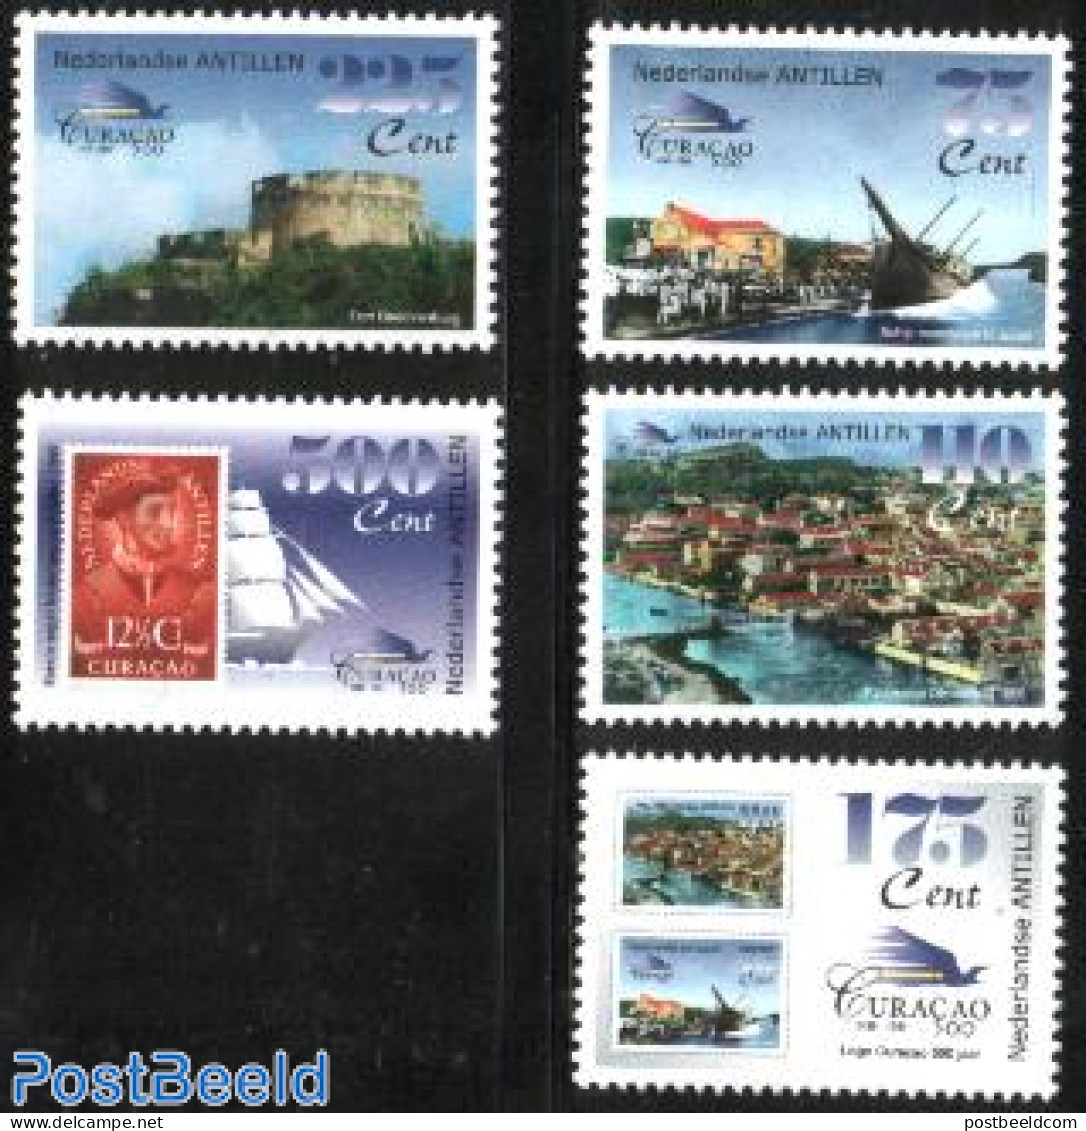 Netherlands Antilles 1999 500 Years Curacao 5v, Mint NH, Transport - Stamps On Stamps - Ships And Boats - Art - Castle.. - Briefmarken Auf Briefmarken